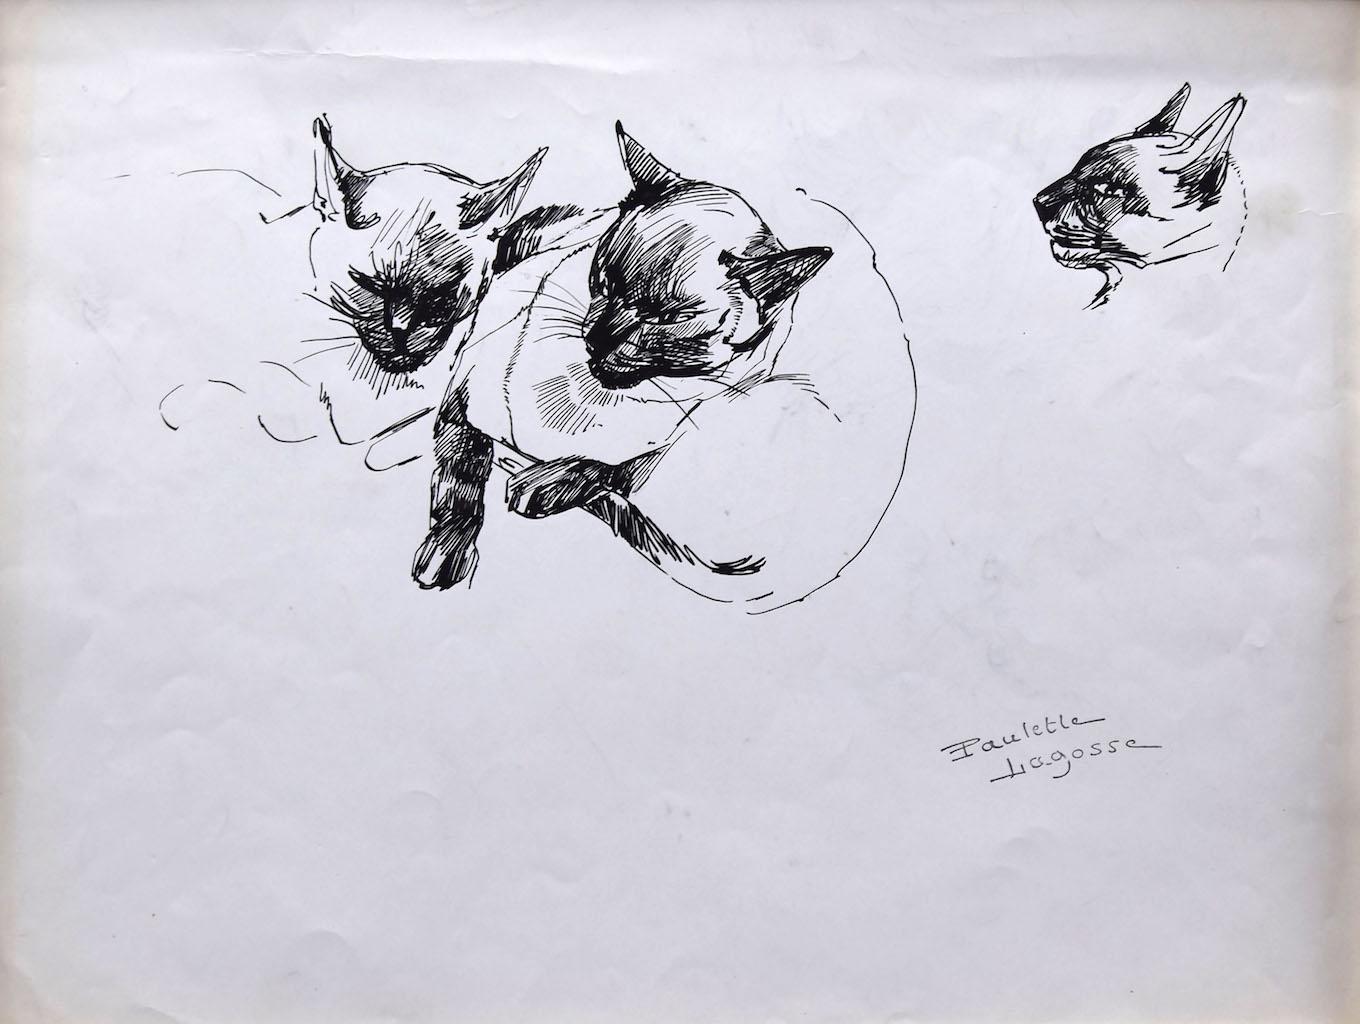 Le Chats est un dessin original au stylo sur papier couleur ivoire, réalisé par Marie Paulette Lagosse (1921-1996).

Signé à la main en bas à droite au stylo. Avec un dessin d'autres chats au dos.

L'état de conservation des œuvres d'art est